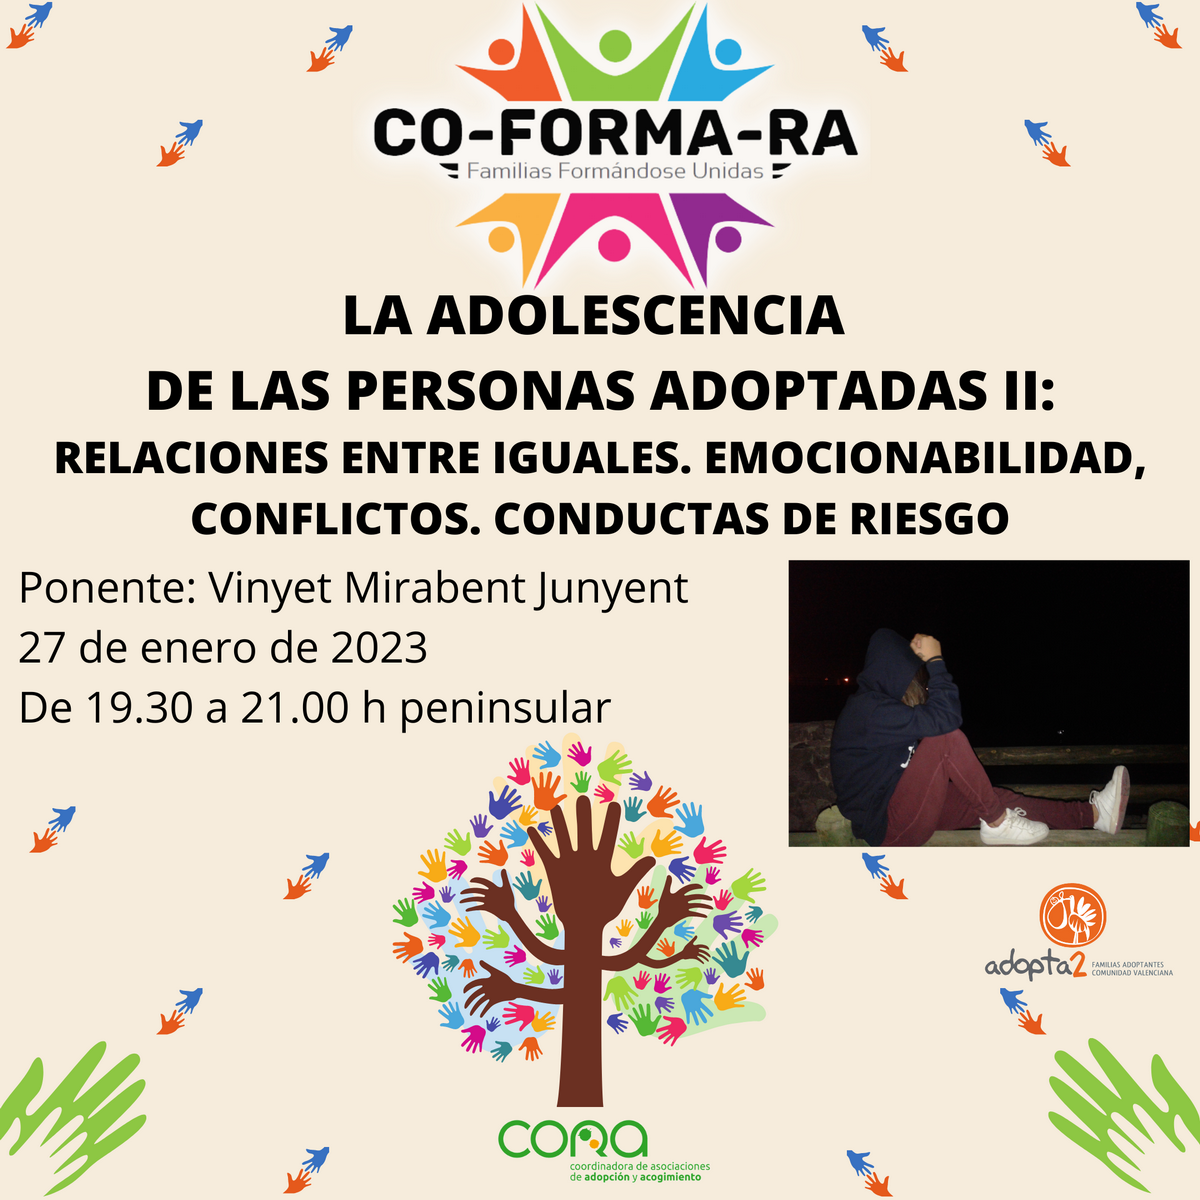 CO-FORMA-RA. Sesión formativa 27 de enero de 2023